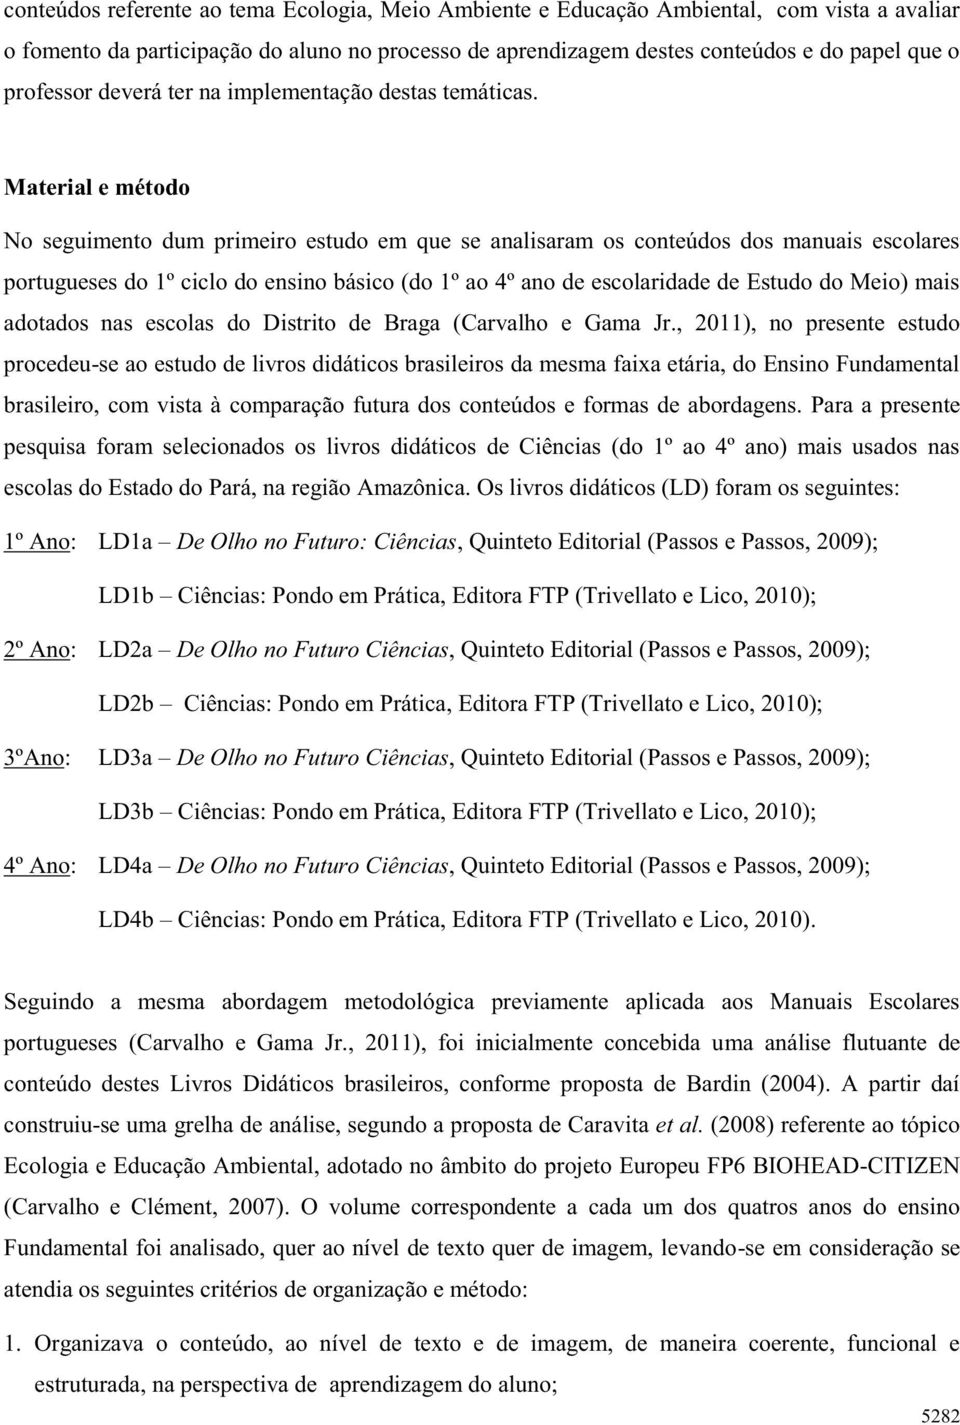 Material e método No seguimento dum primeiro estudo em que se analisaram os conteúdos dos manuais escolares portugueses do 1º ciclo do ensino básico (do 1º ao 4º ano de escolaridade de Estudo do